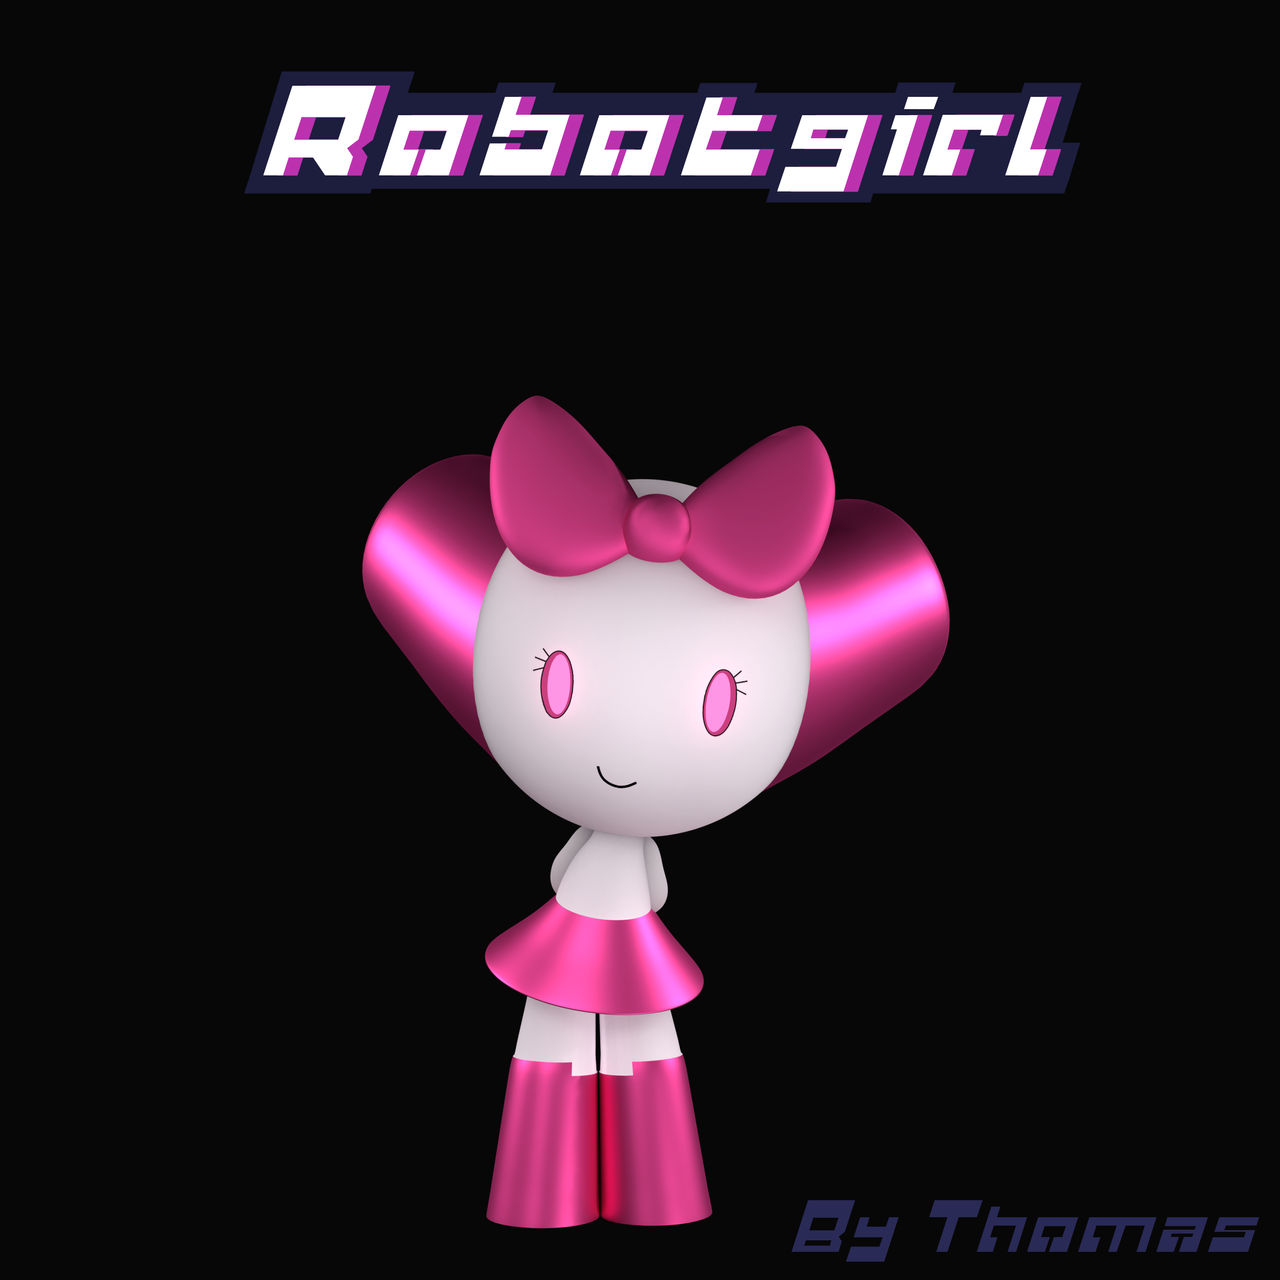 Robotboy - Tommy Turnbull by thomas1158 on DeviantArt